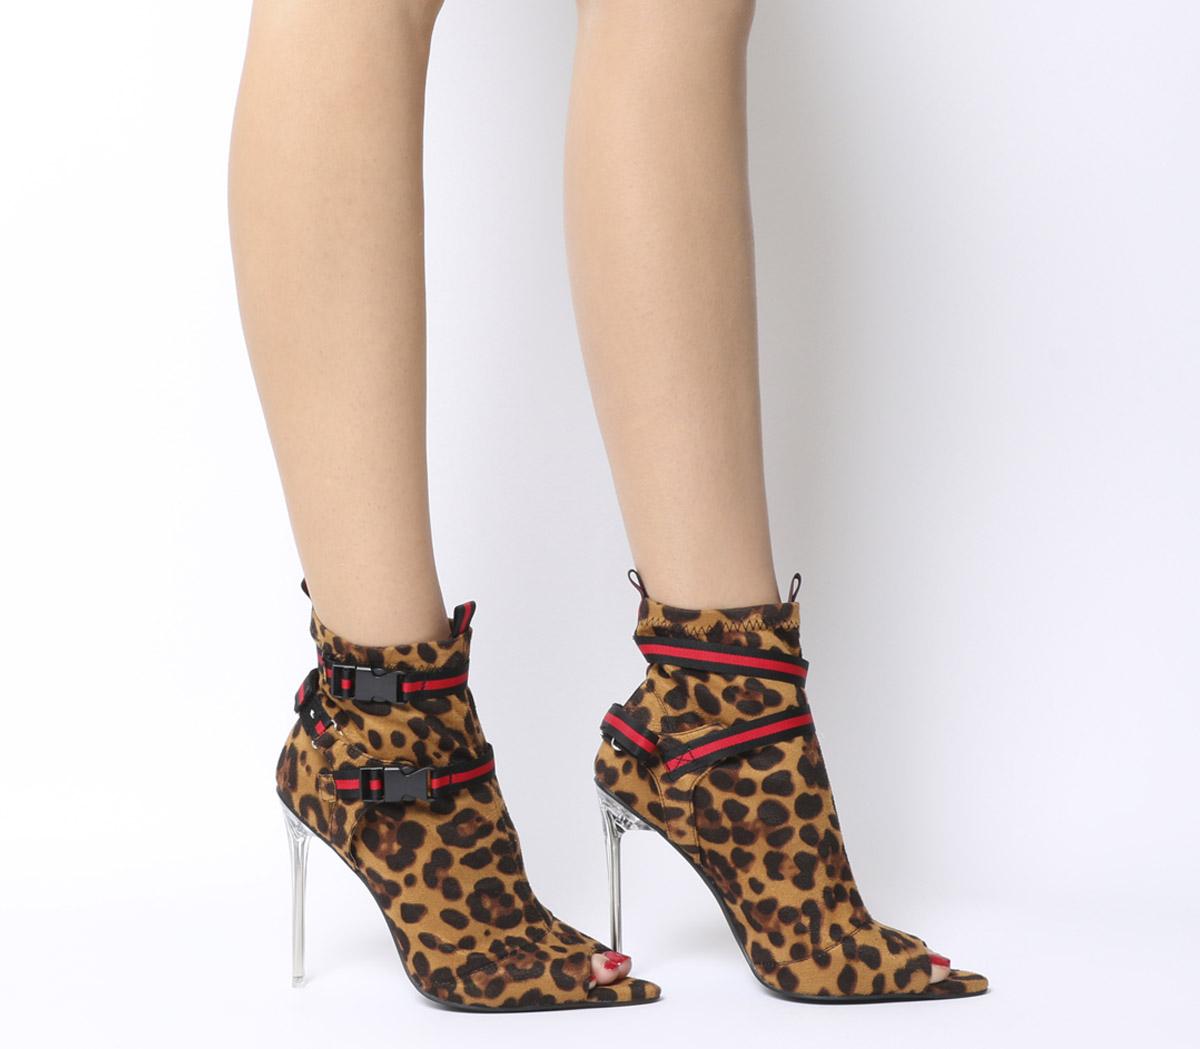 leopard print boot heels